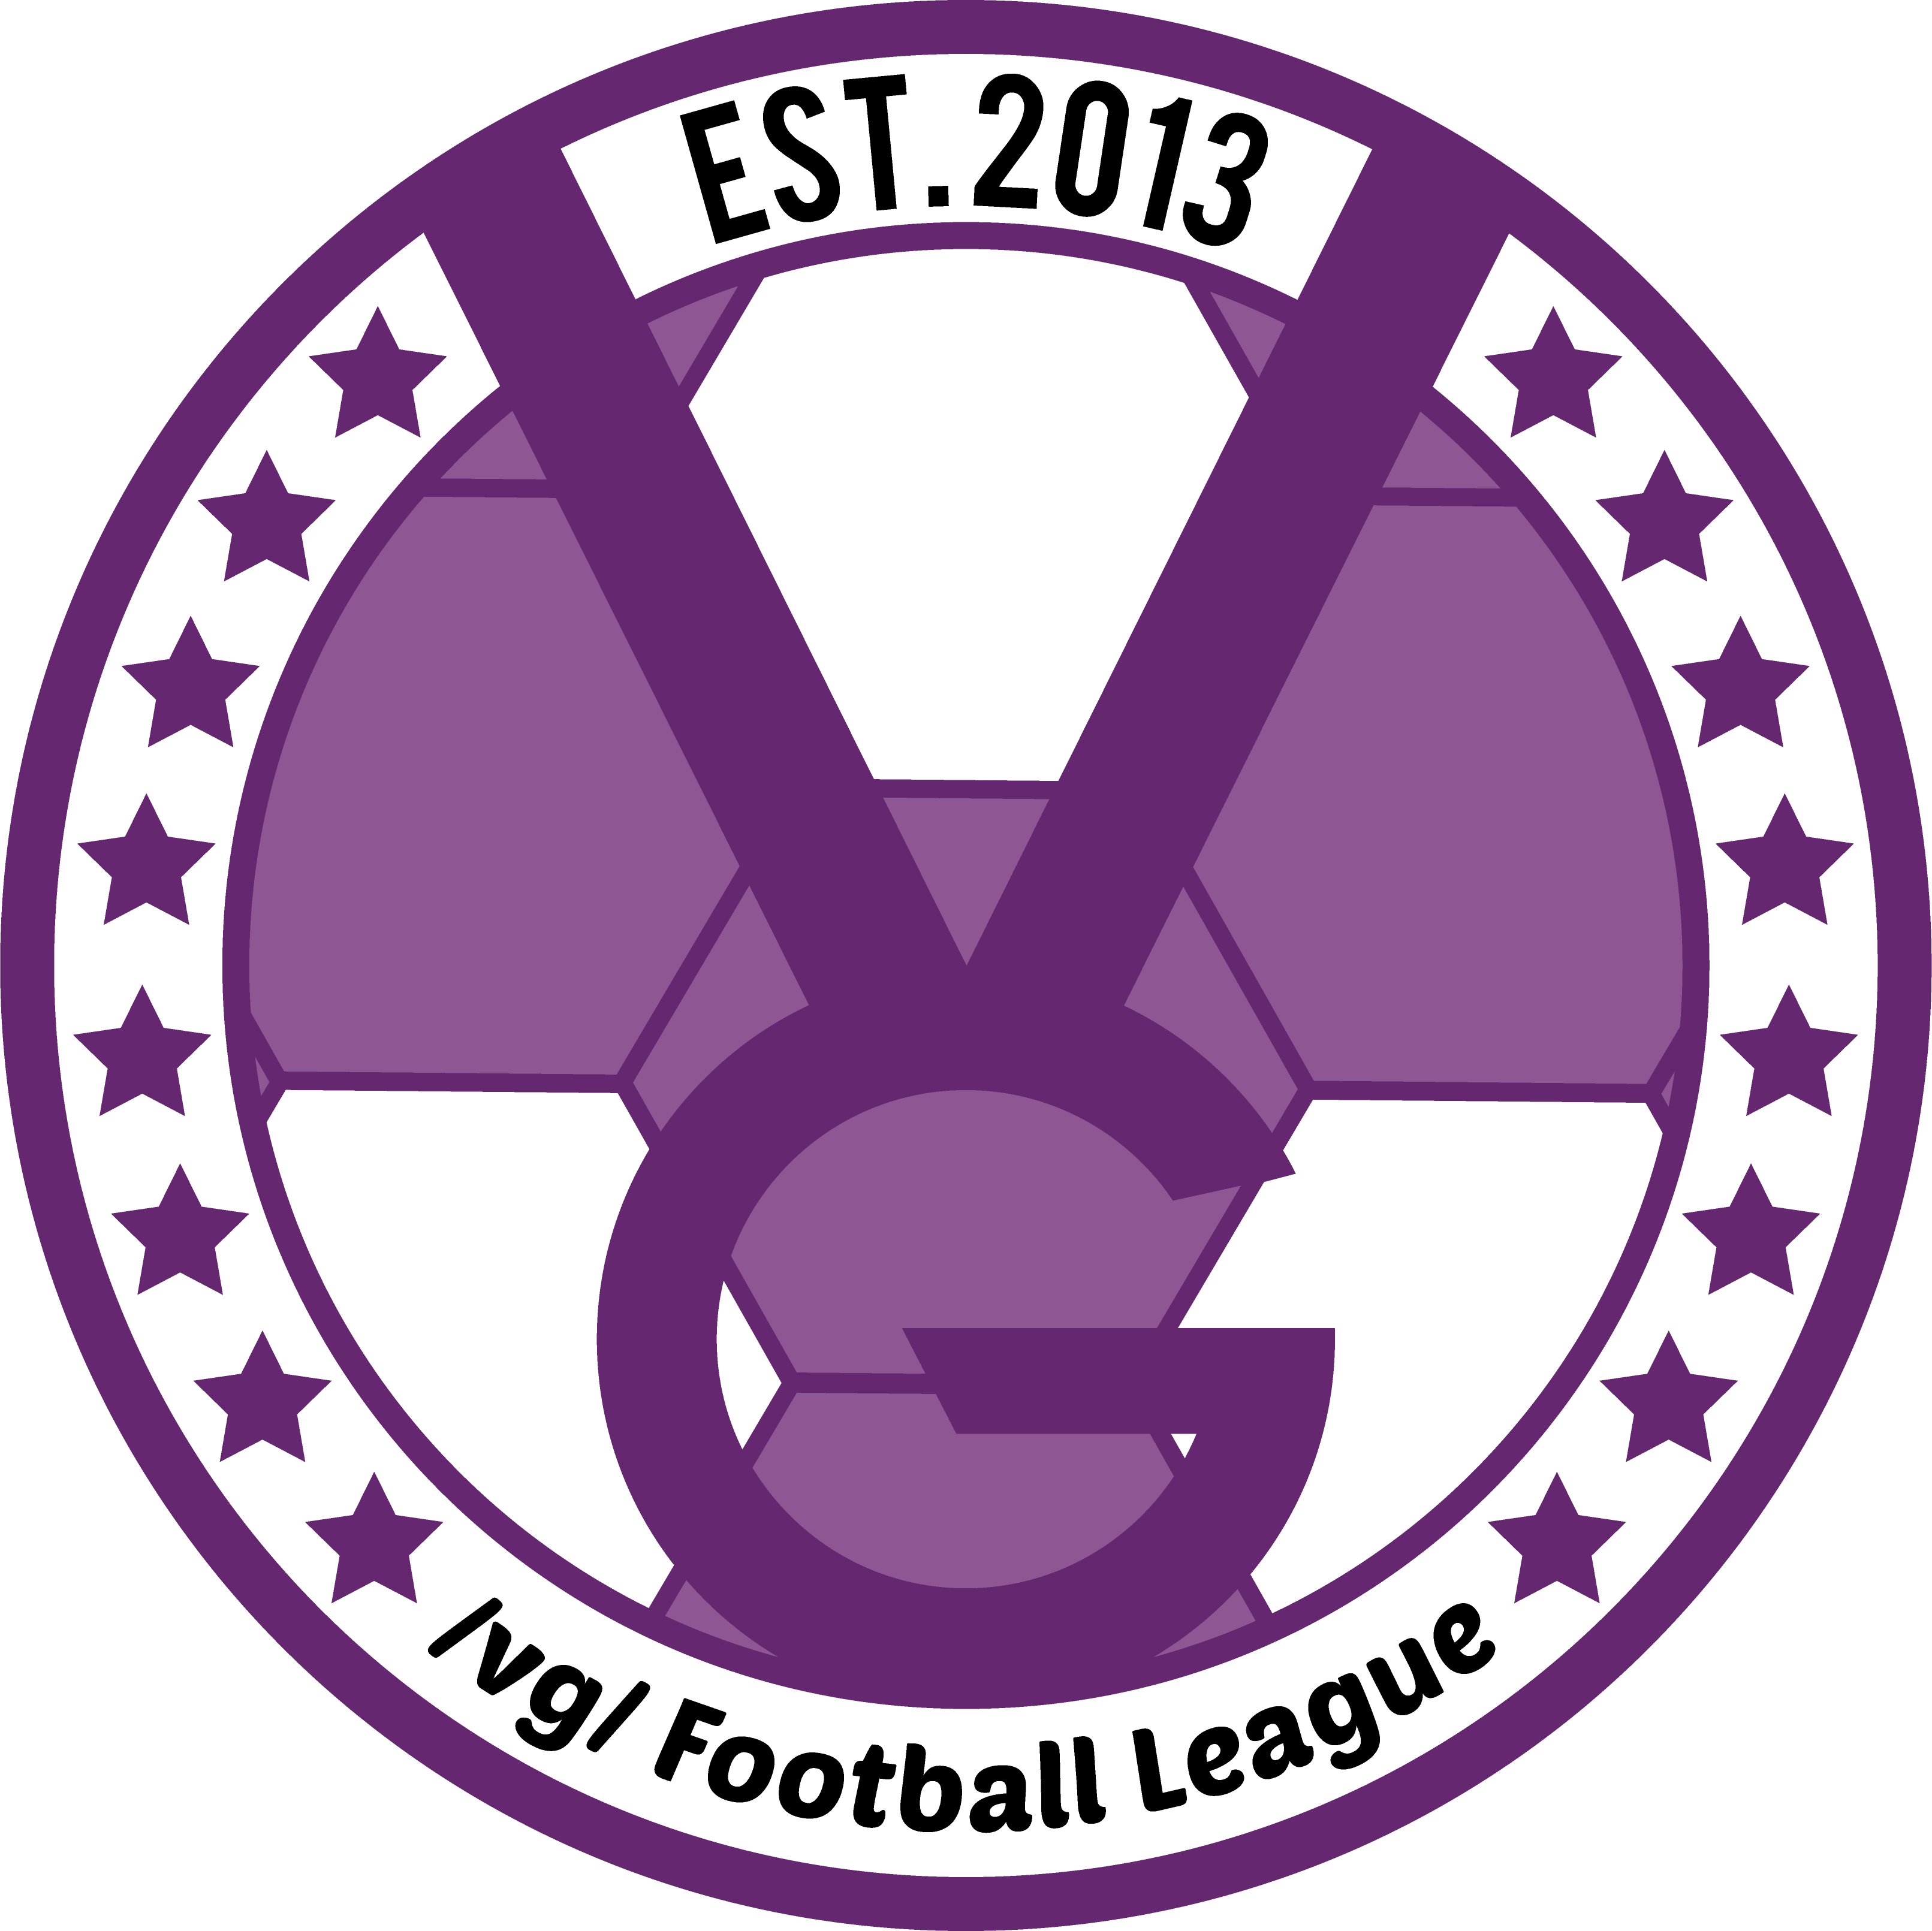 /vg/ League 11